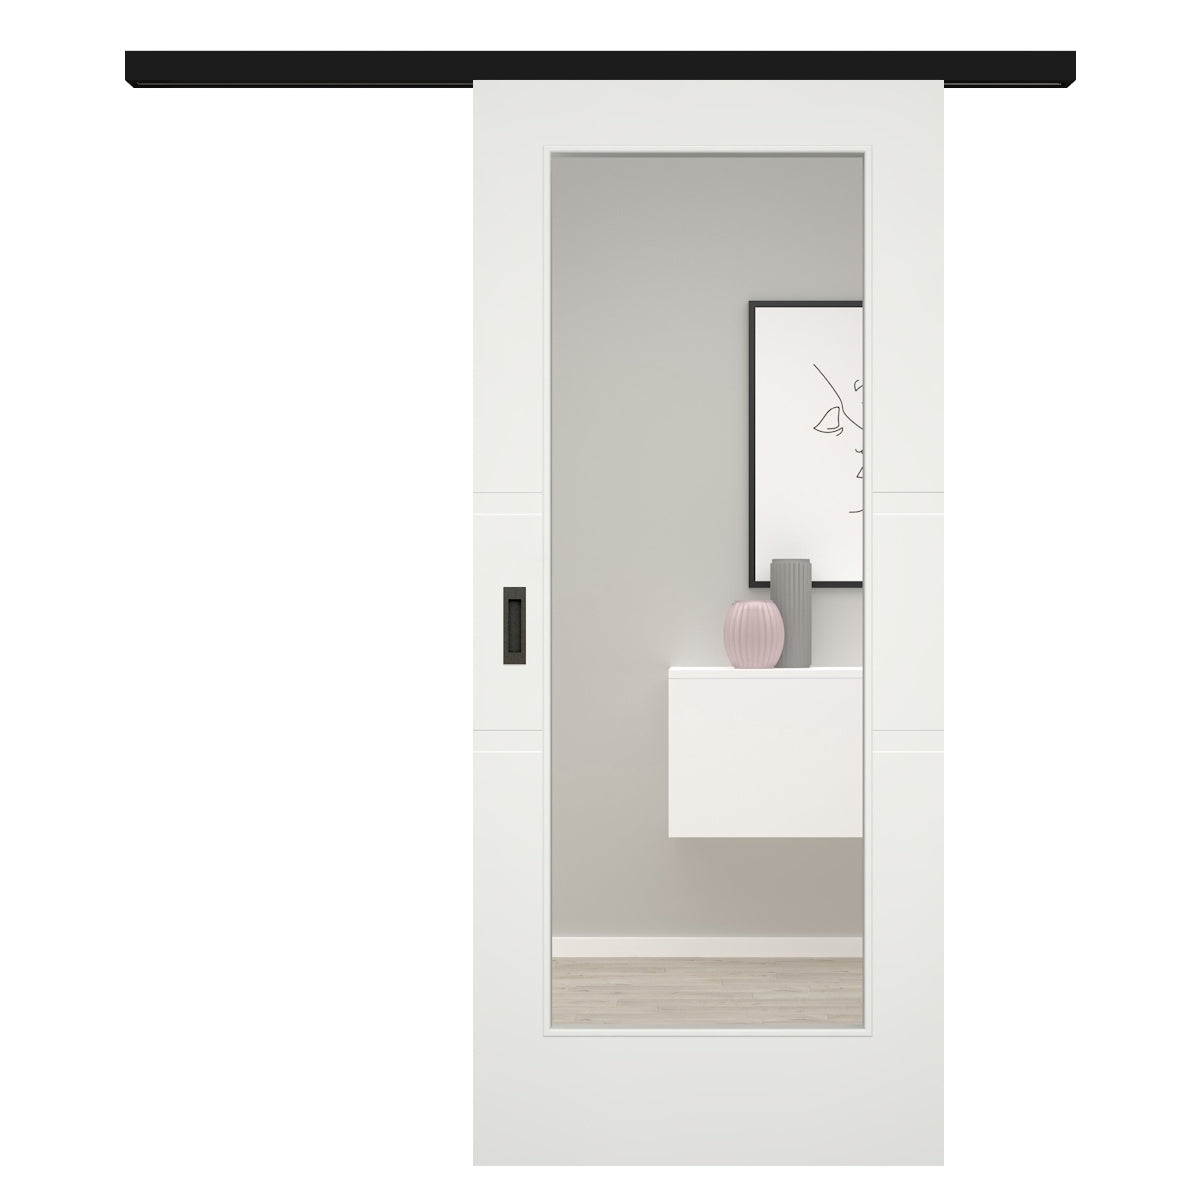 Schiebetür für Set mit schwarzem Laufkasten mit Lichtausschnitt soft-weiß 2 breite Rillen - Modell Designtür QB21LA